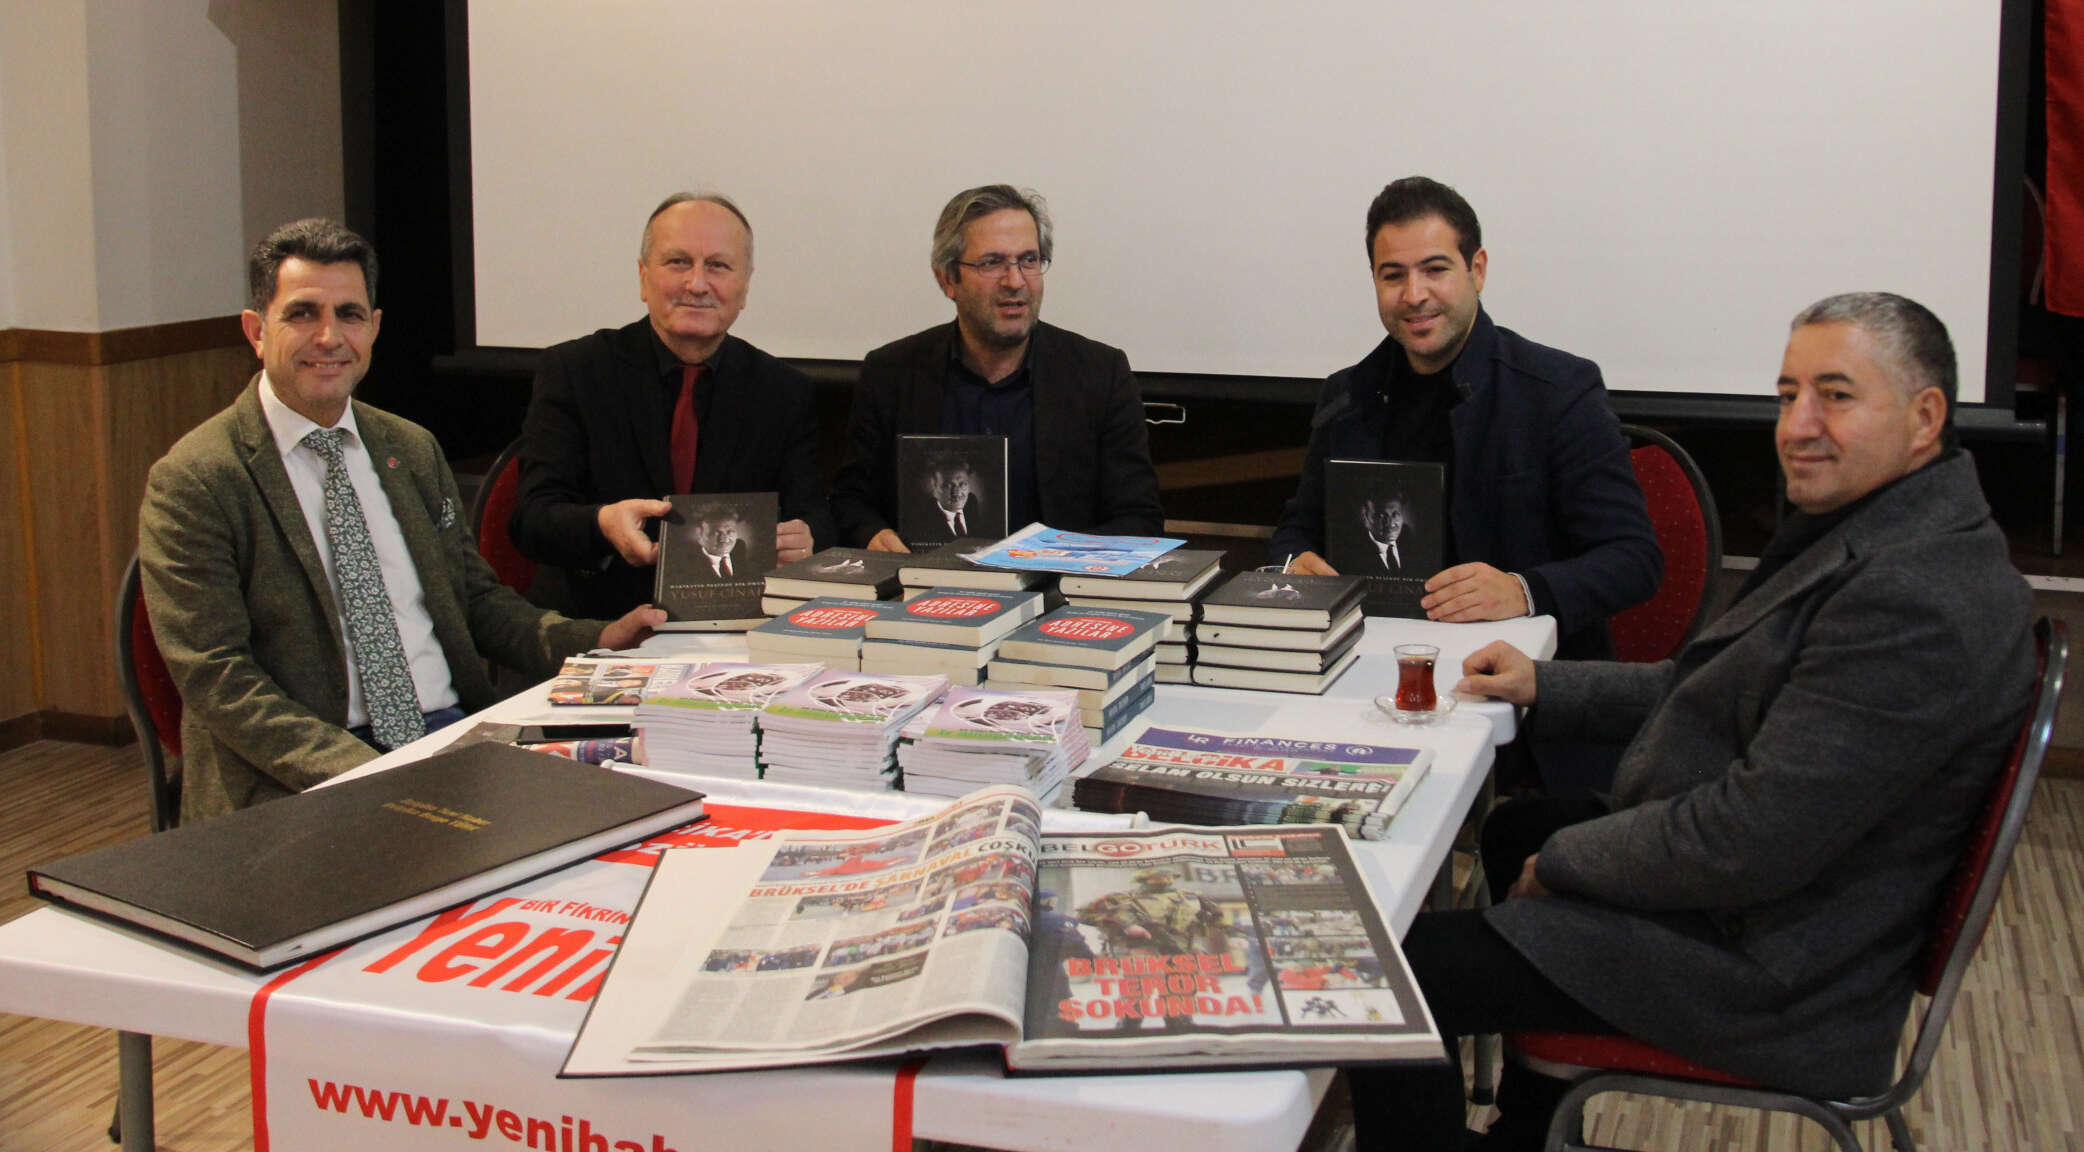 IGF haber koordinatörü Mehmet Çetinkaya ( sol başta), Gazeteci Yazar Yusuf Cinal ( soldan 2. ), Brüksel Bölge Parlementosu Üyesi Şevket Temiz ( soldan 3. ), Brüksel Schaerbeek Belediye Başkan Yardımcısı Mehmet Bilge ( soldan 4. ) ve İş insanı Erol Özen ( sağ başta) ile birlikte görülüyor.